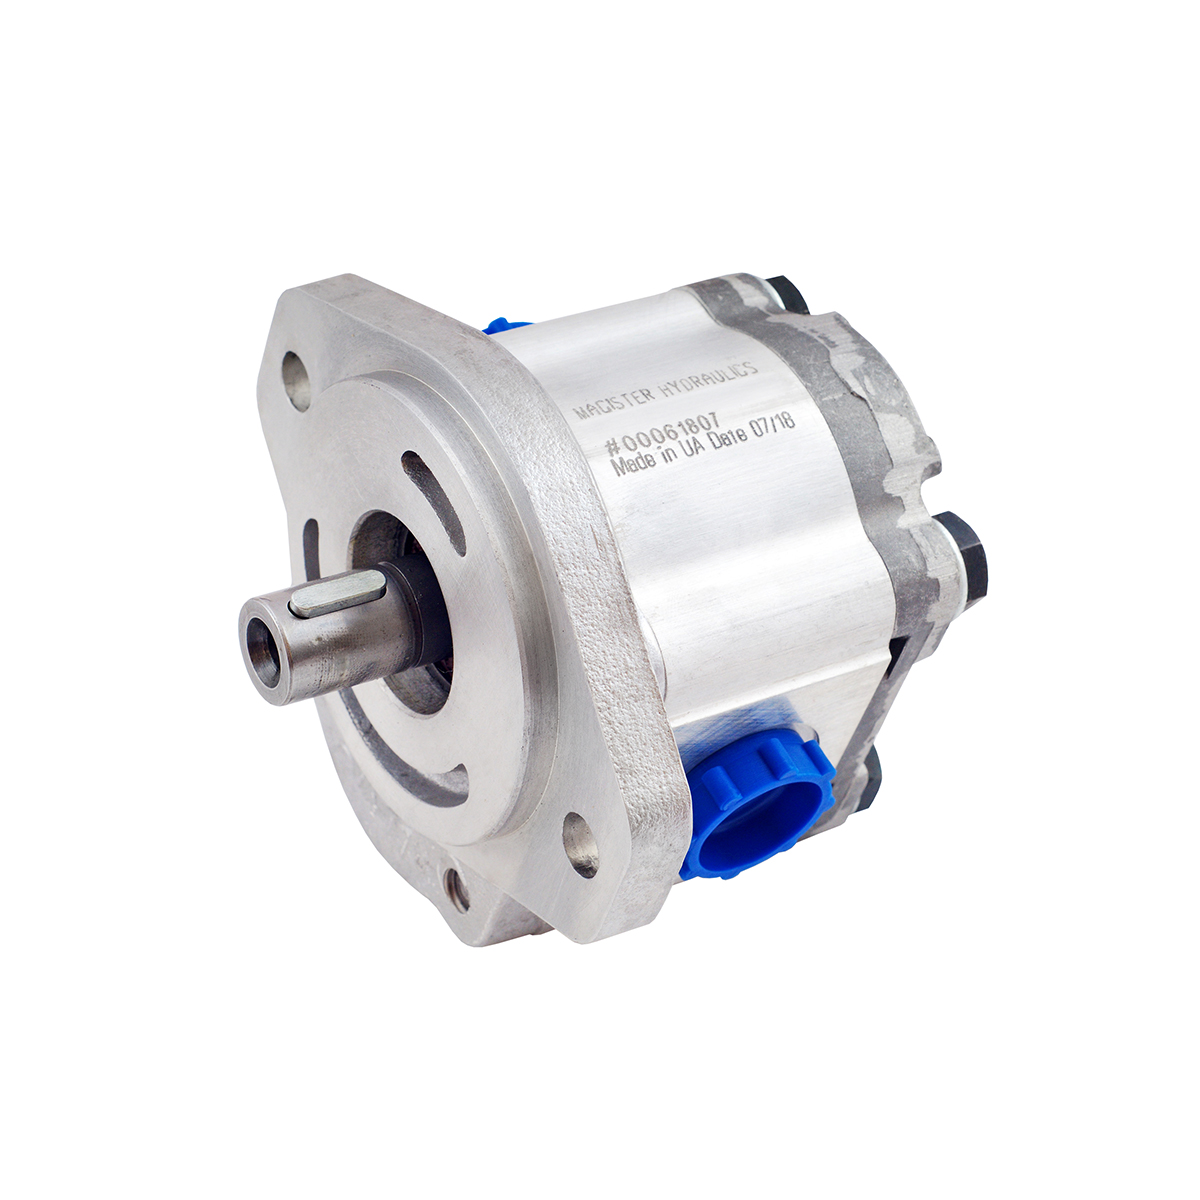 0.69 CID hydraulic gear pump, 5/8 keyed shaft counter-clockwise gear pump | Magister Hydraulics